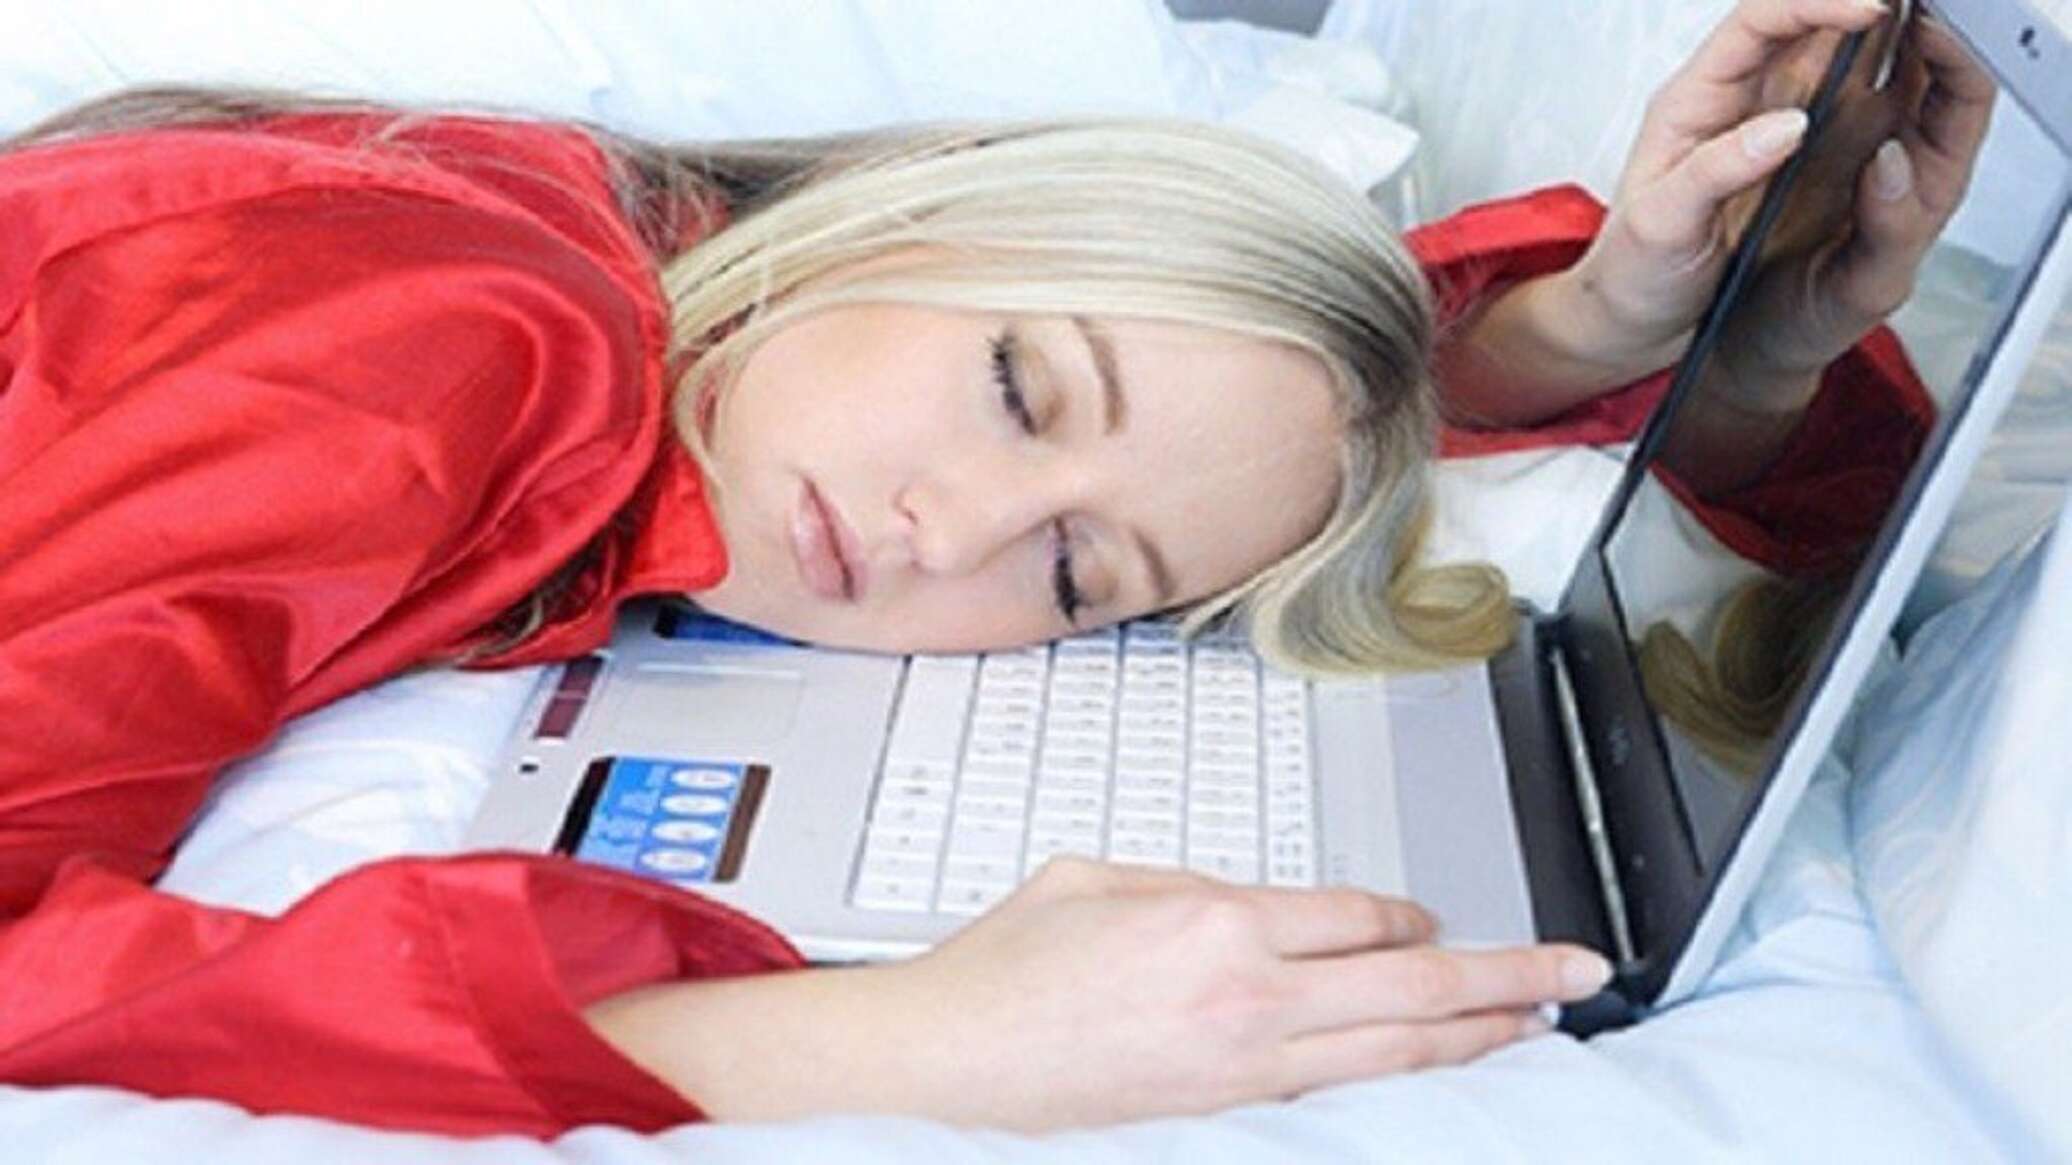 ابتكار جهاز أمريكي "للعمل أثناء النوم"... صور